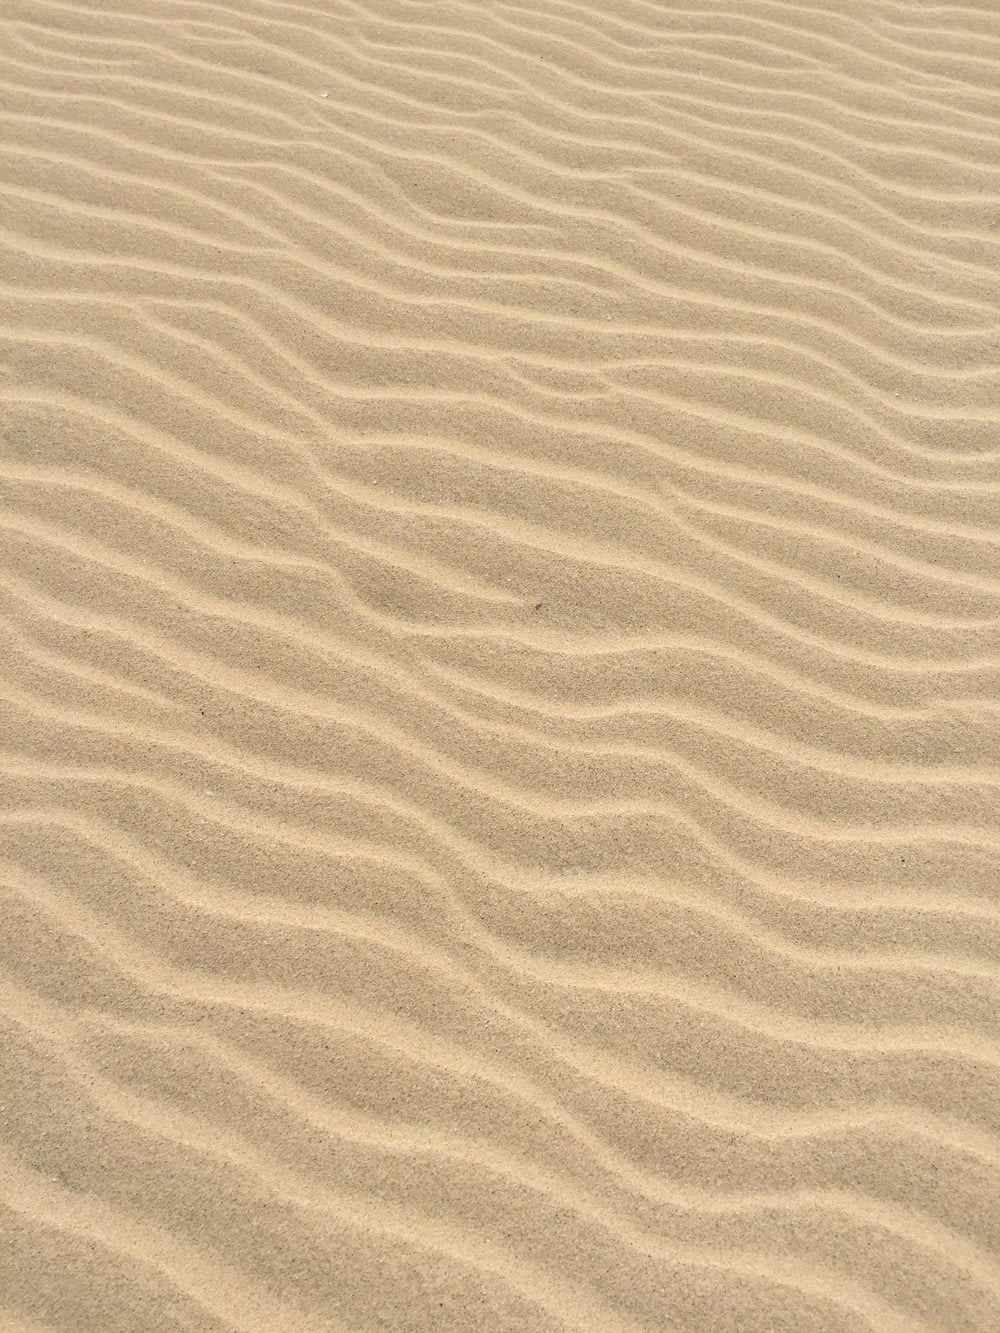 茶色の砂浜